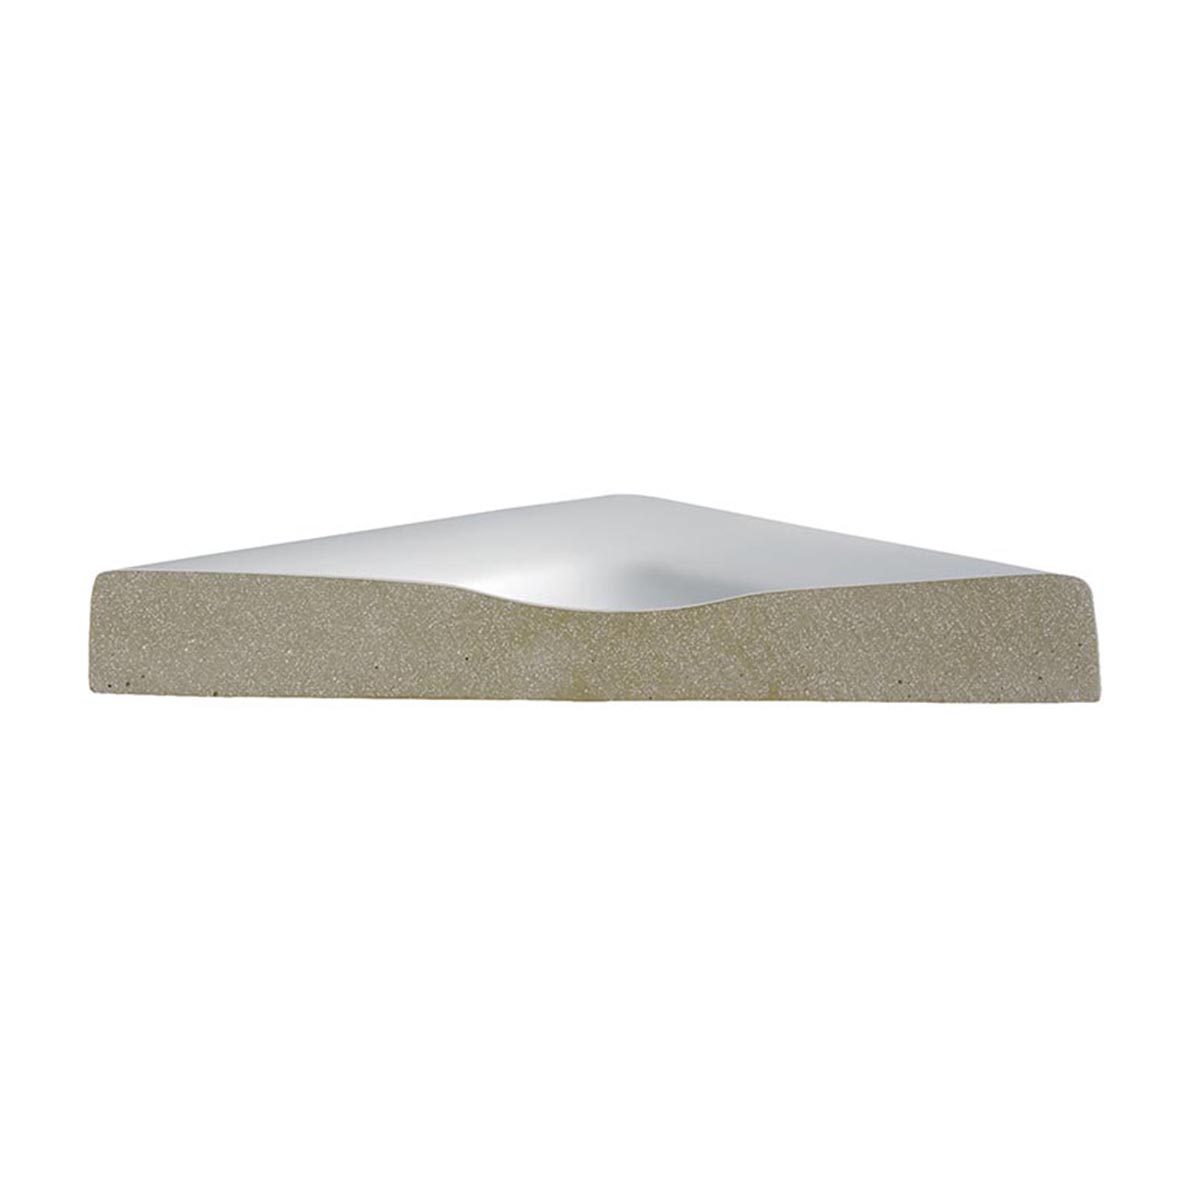 HSK Marmor-Polymer Quadrat Duschwanne plan-Weiß-80 x 80 cm-ohne AntiSlip-Beschichtung-ohne Aquaproof-Dichtset